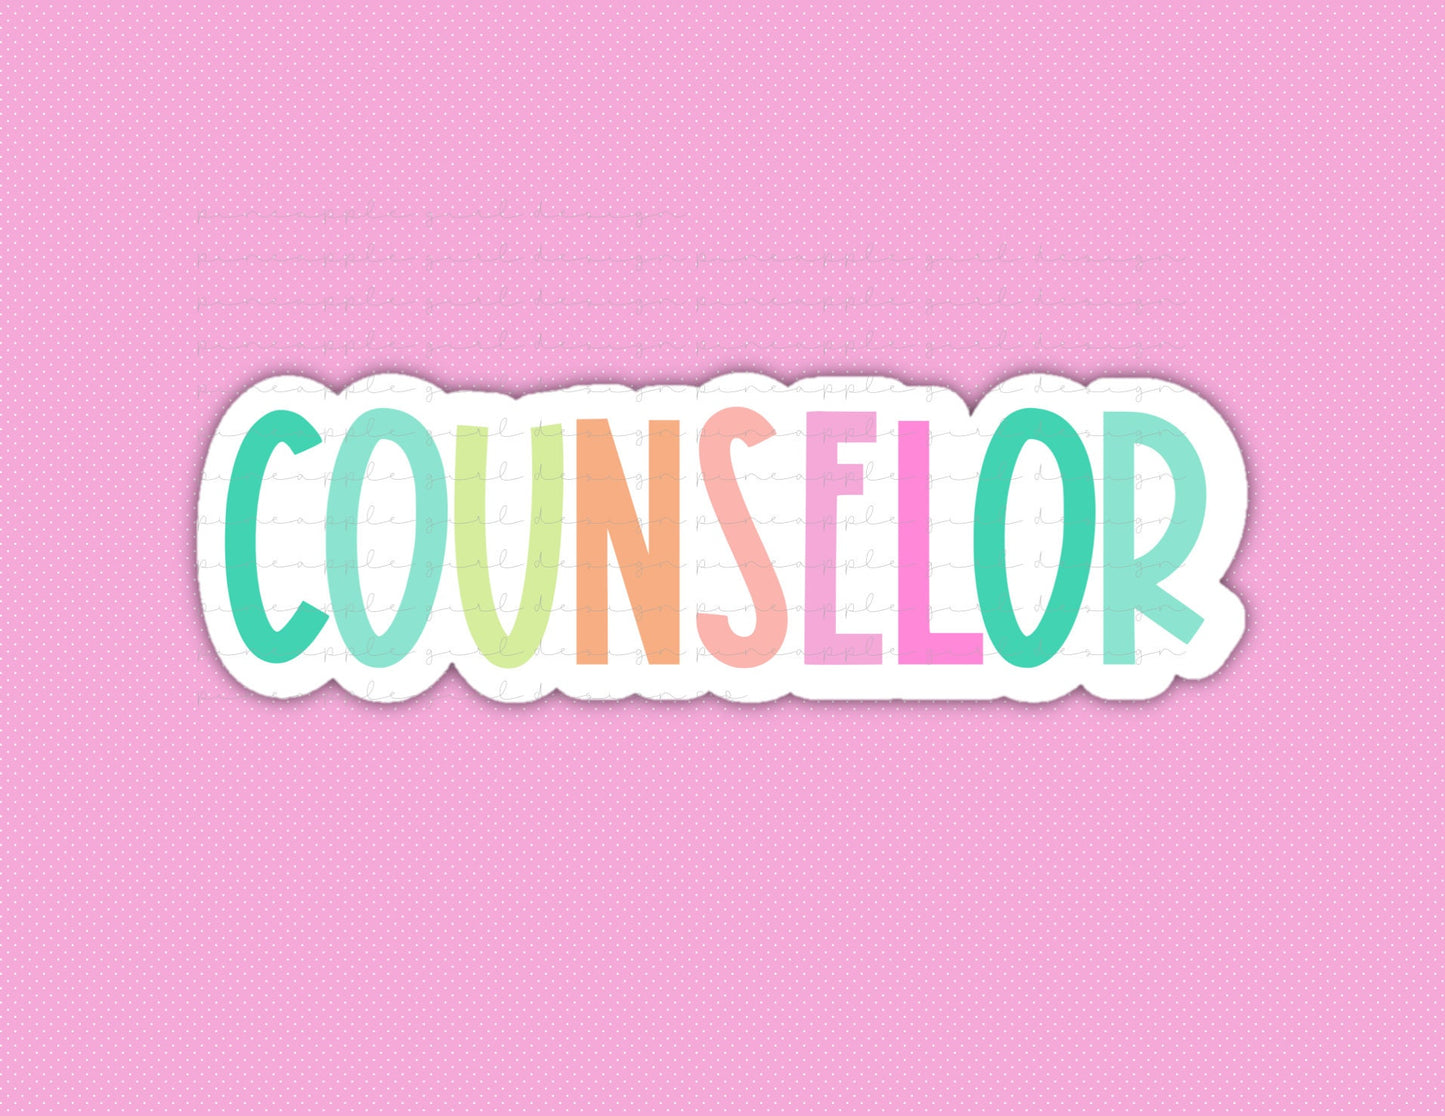 School Counselor Sticker